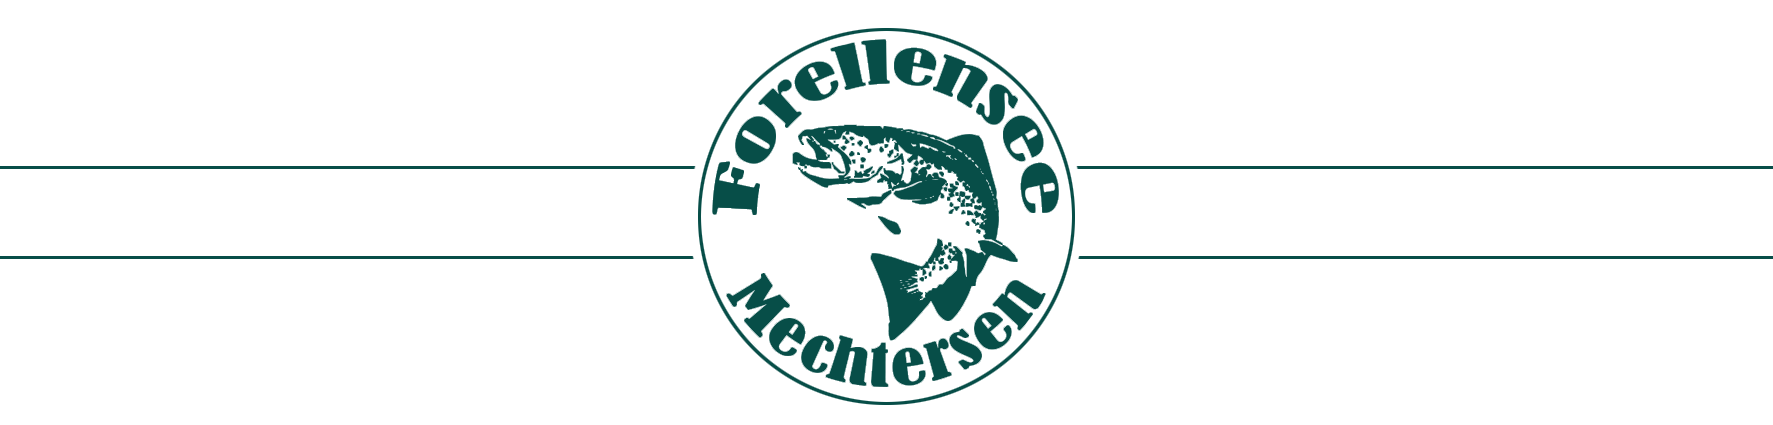 Forellensee-Mechtersen Logo